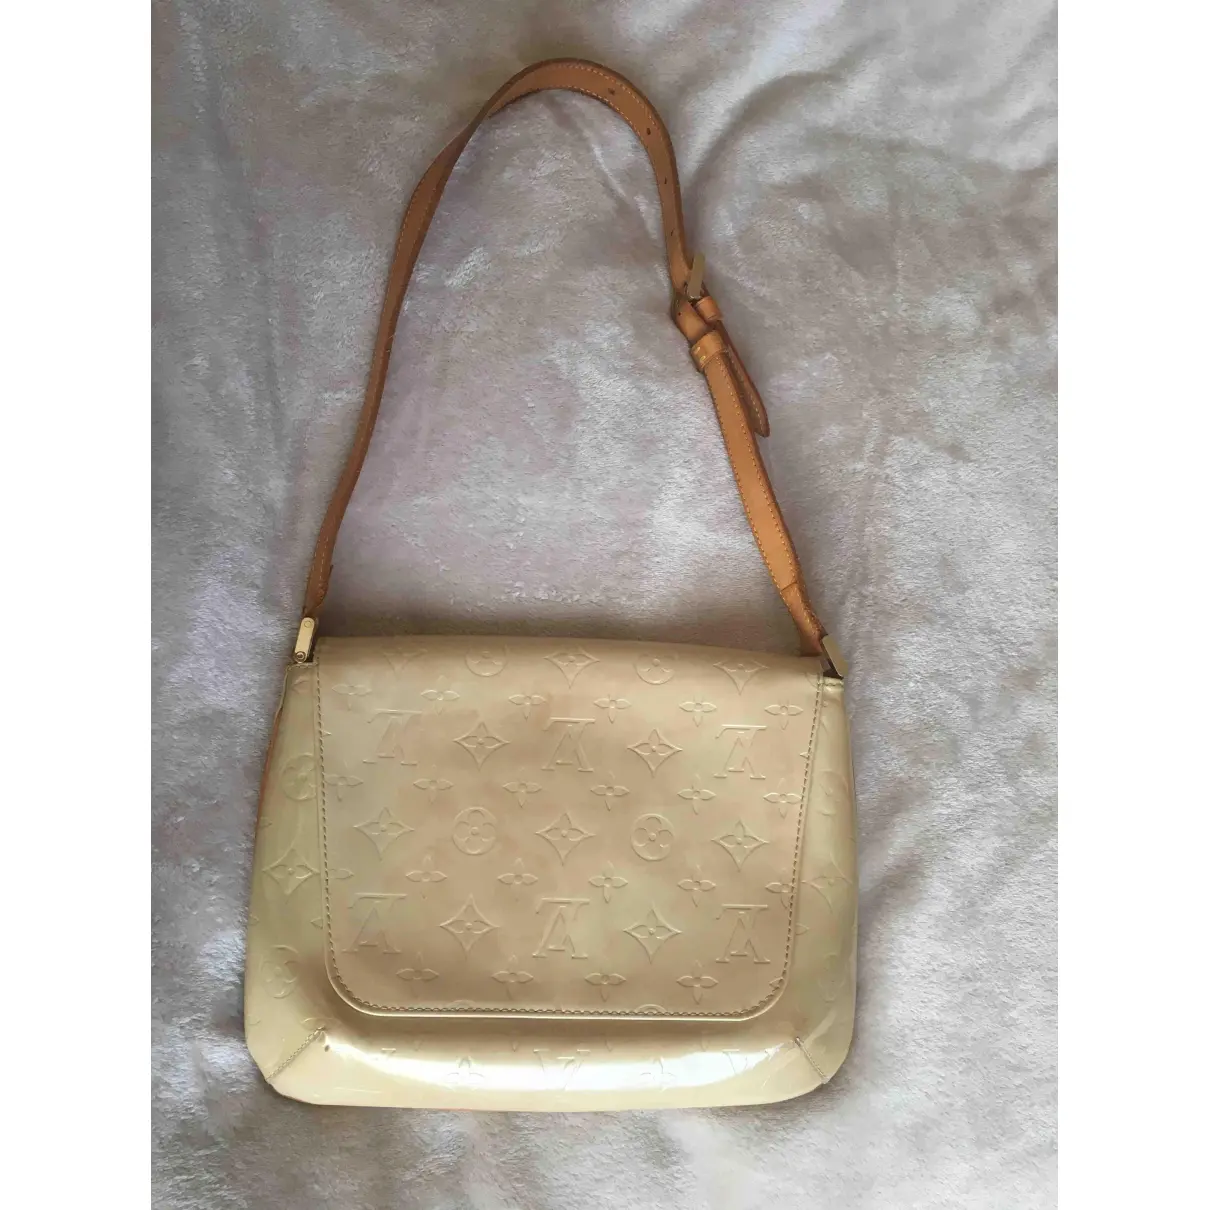 Buy Louis Vuitton Thompson patent leather handbag online - Vintage